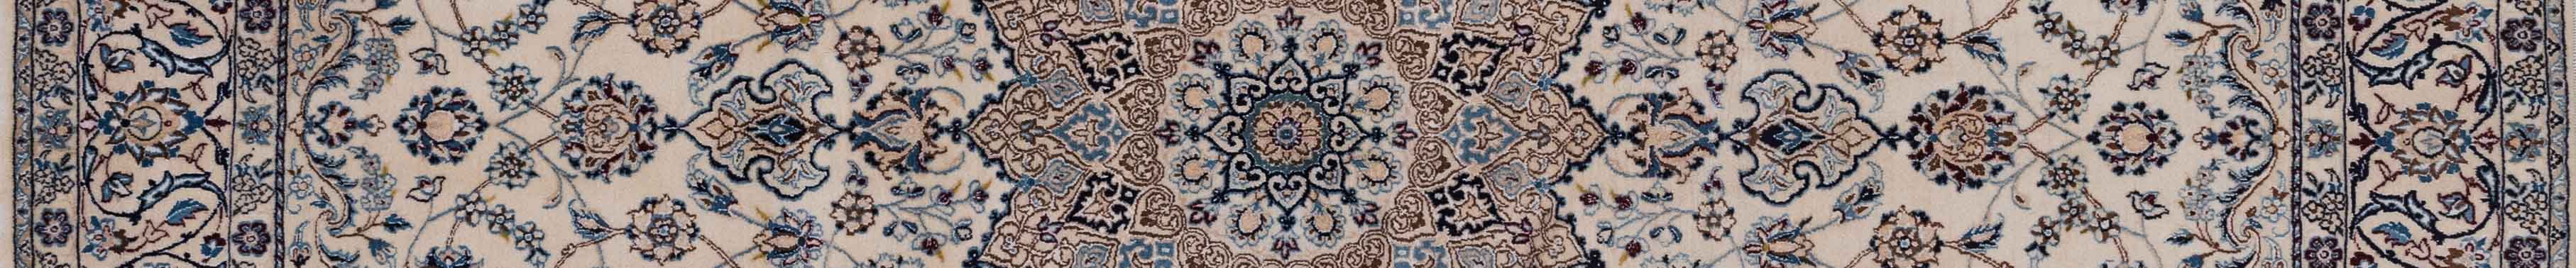 Nain Persian Carpet Rug N1Carpet Canada Montreal Tapis Persan 2750